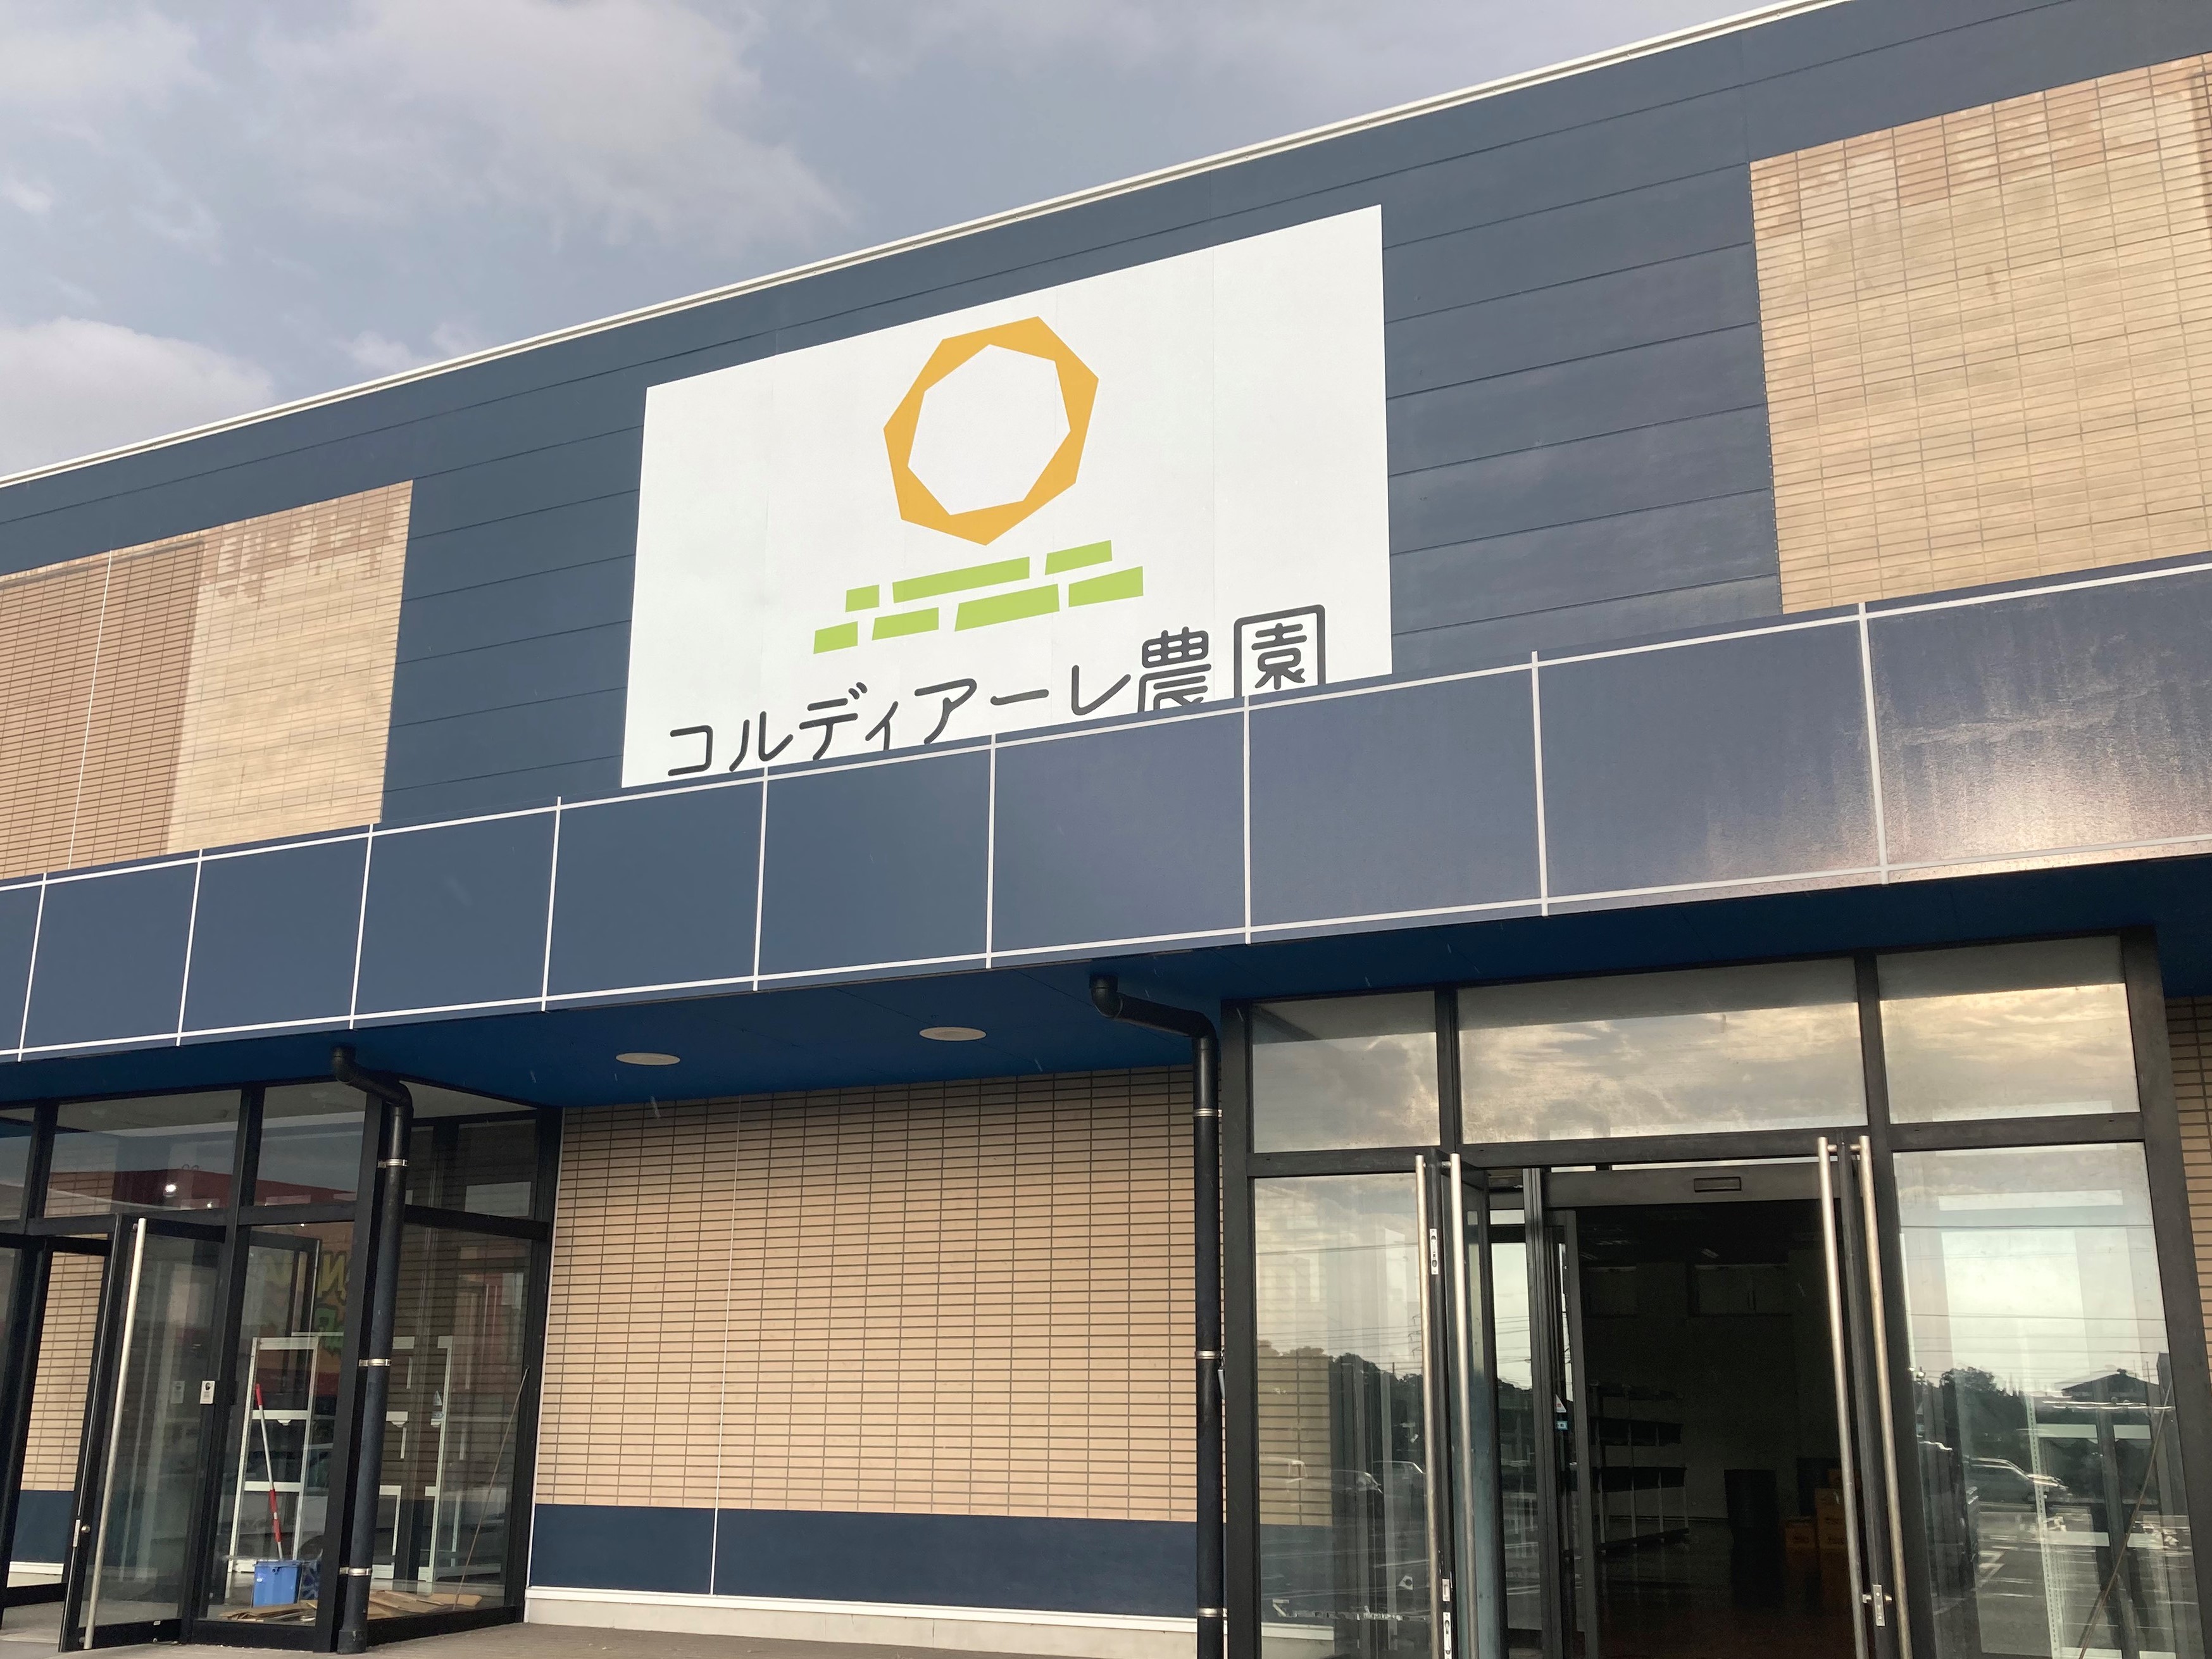 地方創生型障がい者雇用支援サービス「コルディアーレ農園」が2022年11月福岡県大牟田市に新規オープンいたします。